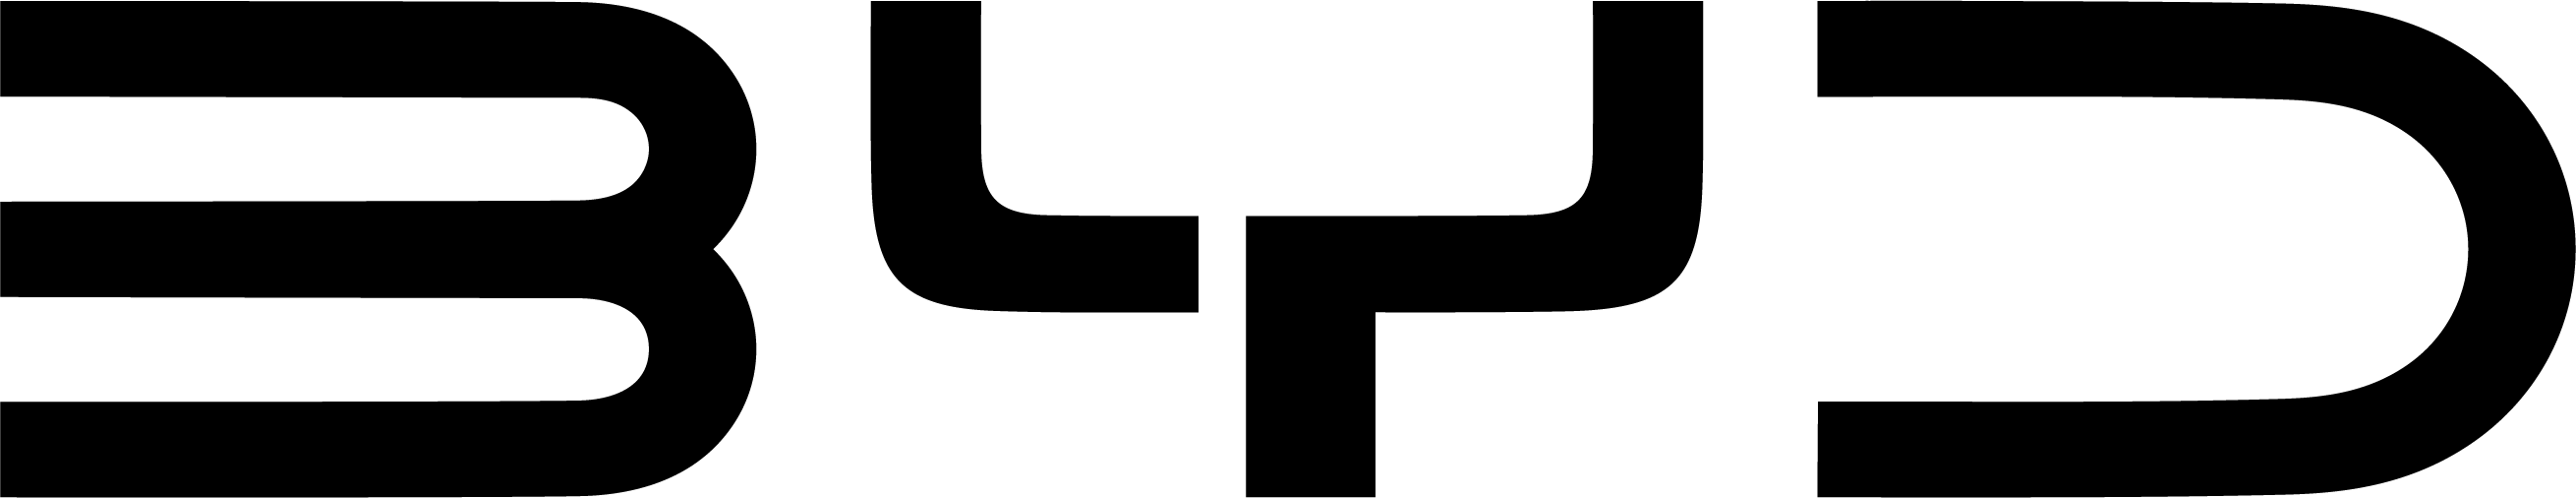 BYD-Logo_black